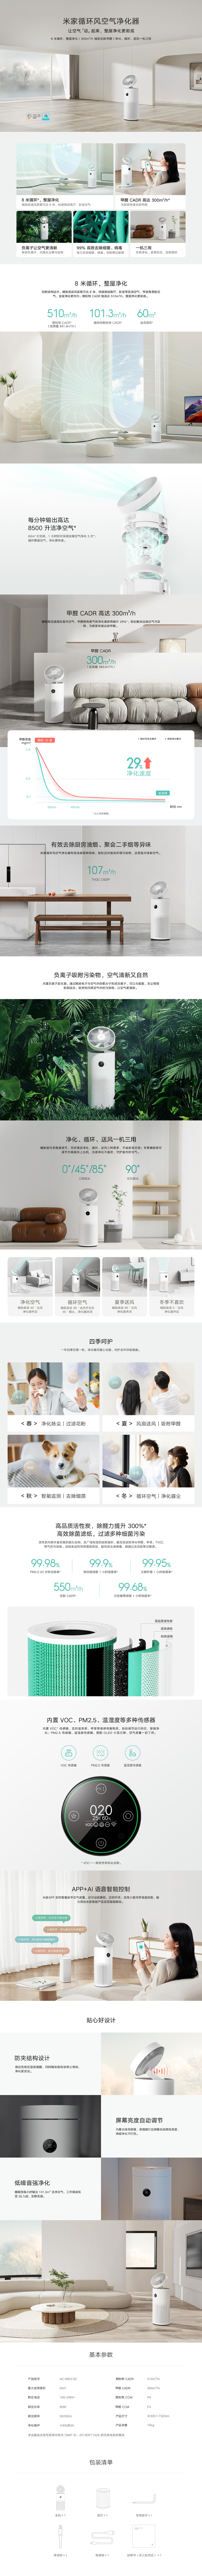 XiaoMi Mijia Circulating Wind Air Purifier